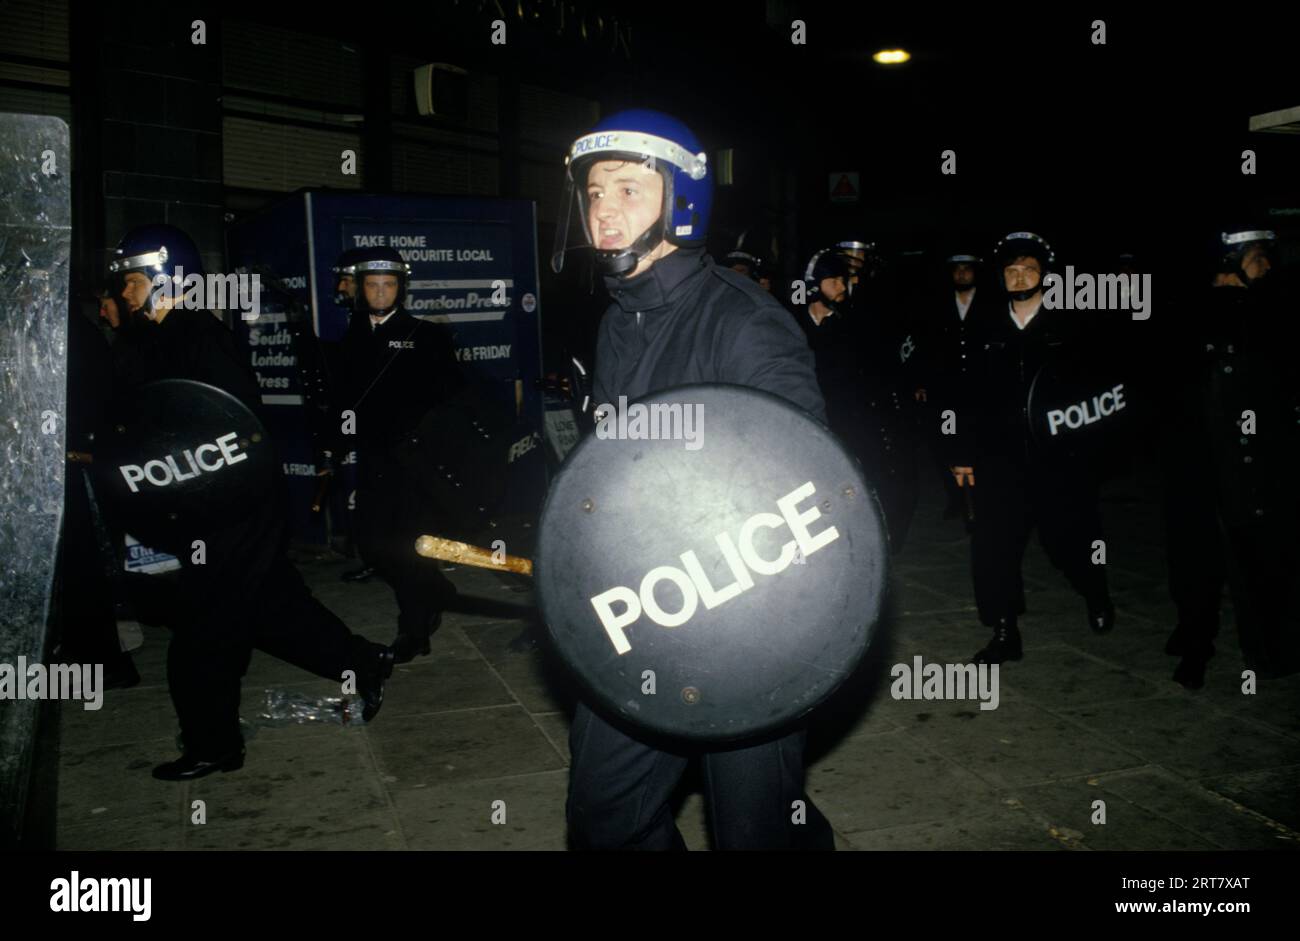 Brixton Riot avril 1985 Londres Polce charge avec bouclier anti-émeute. Brixton Sud Londres avril 1980s Angleterre HOMER SYKES. Banque D'Images